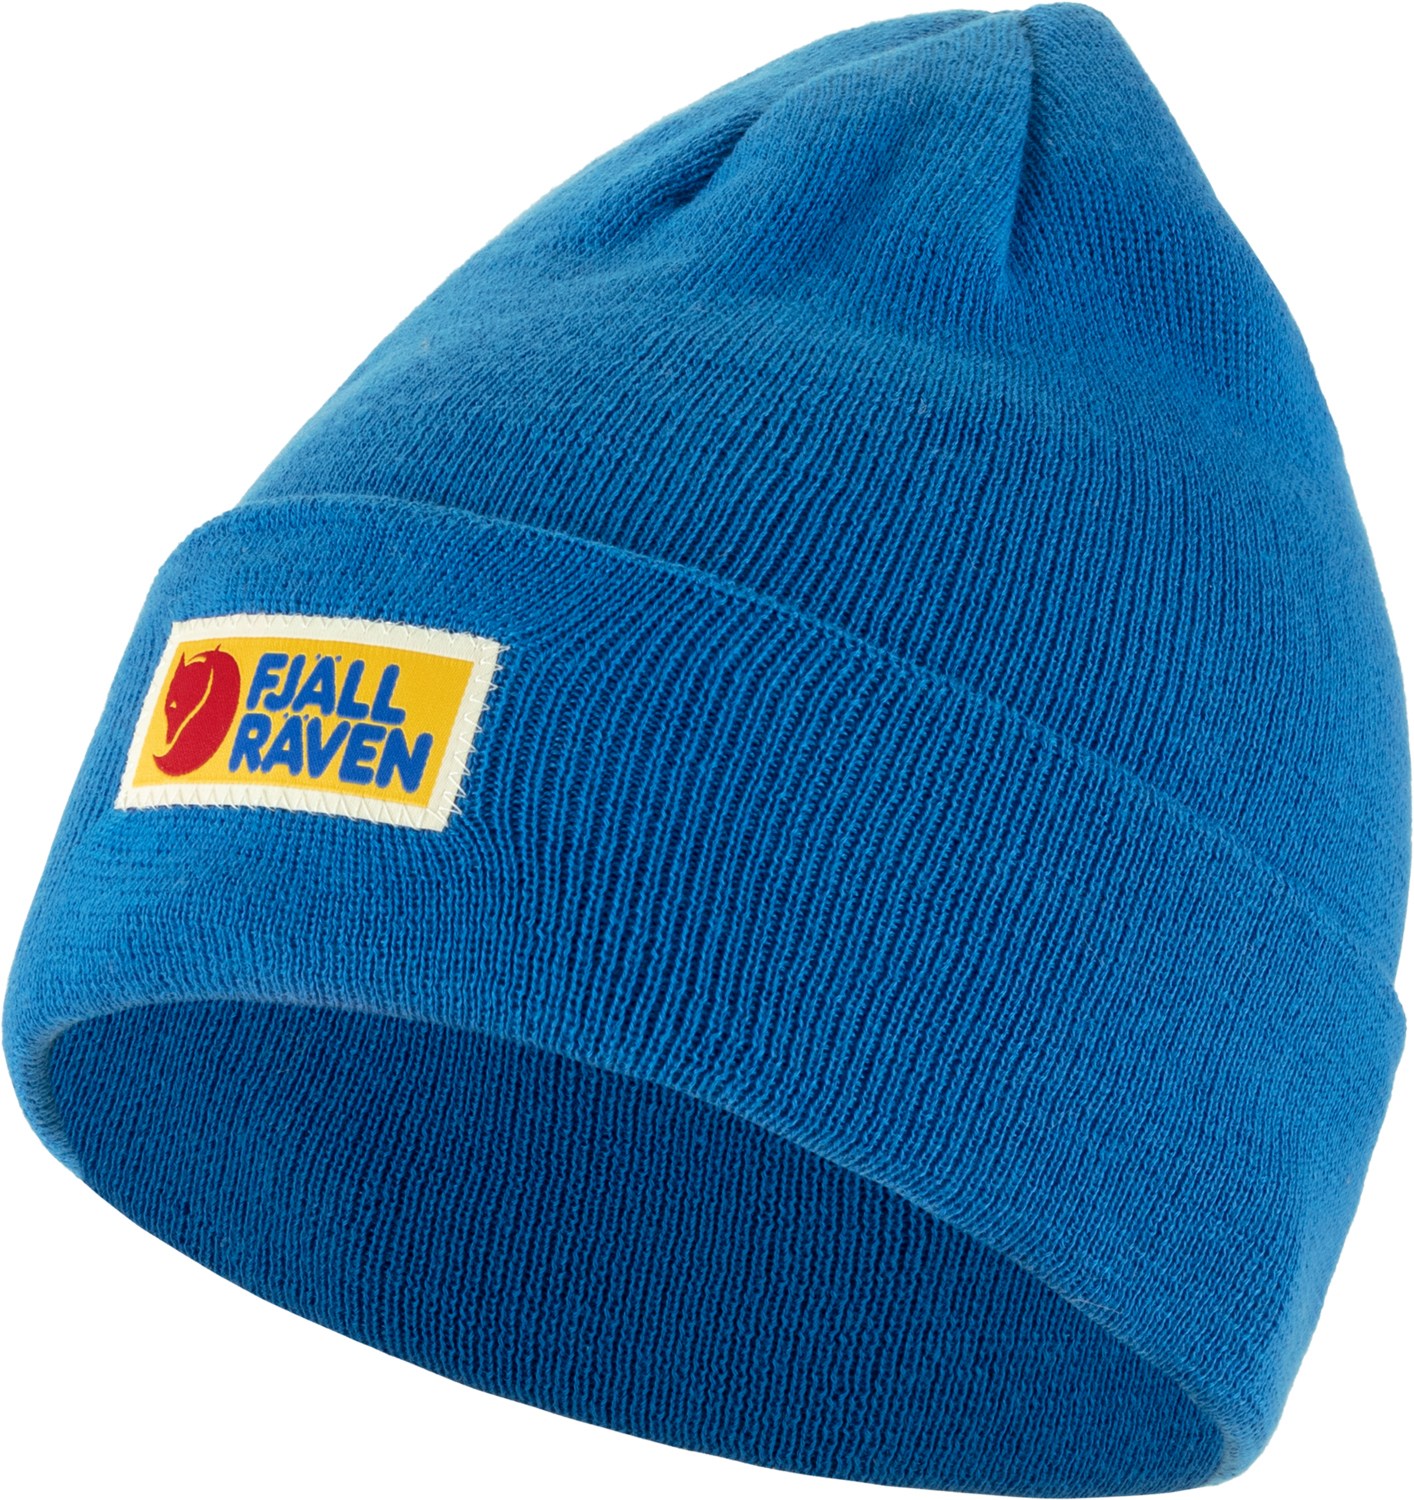 Классическая шапка Vardag Fjallraven, синий